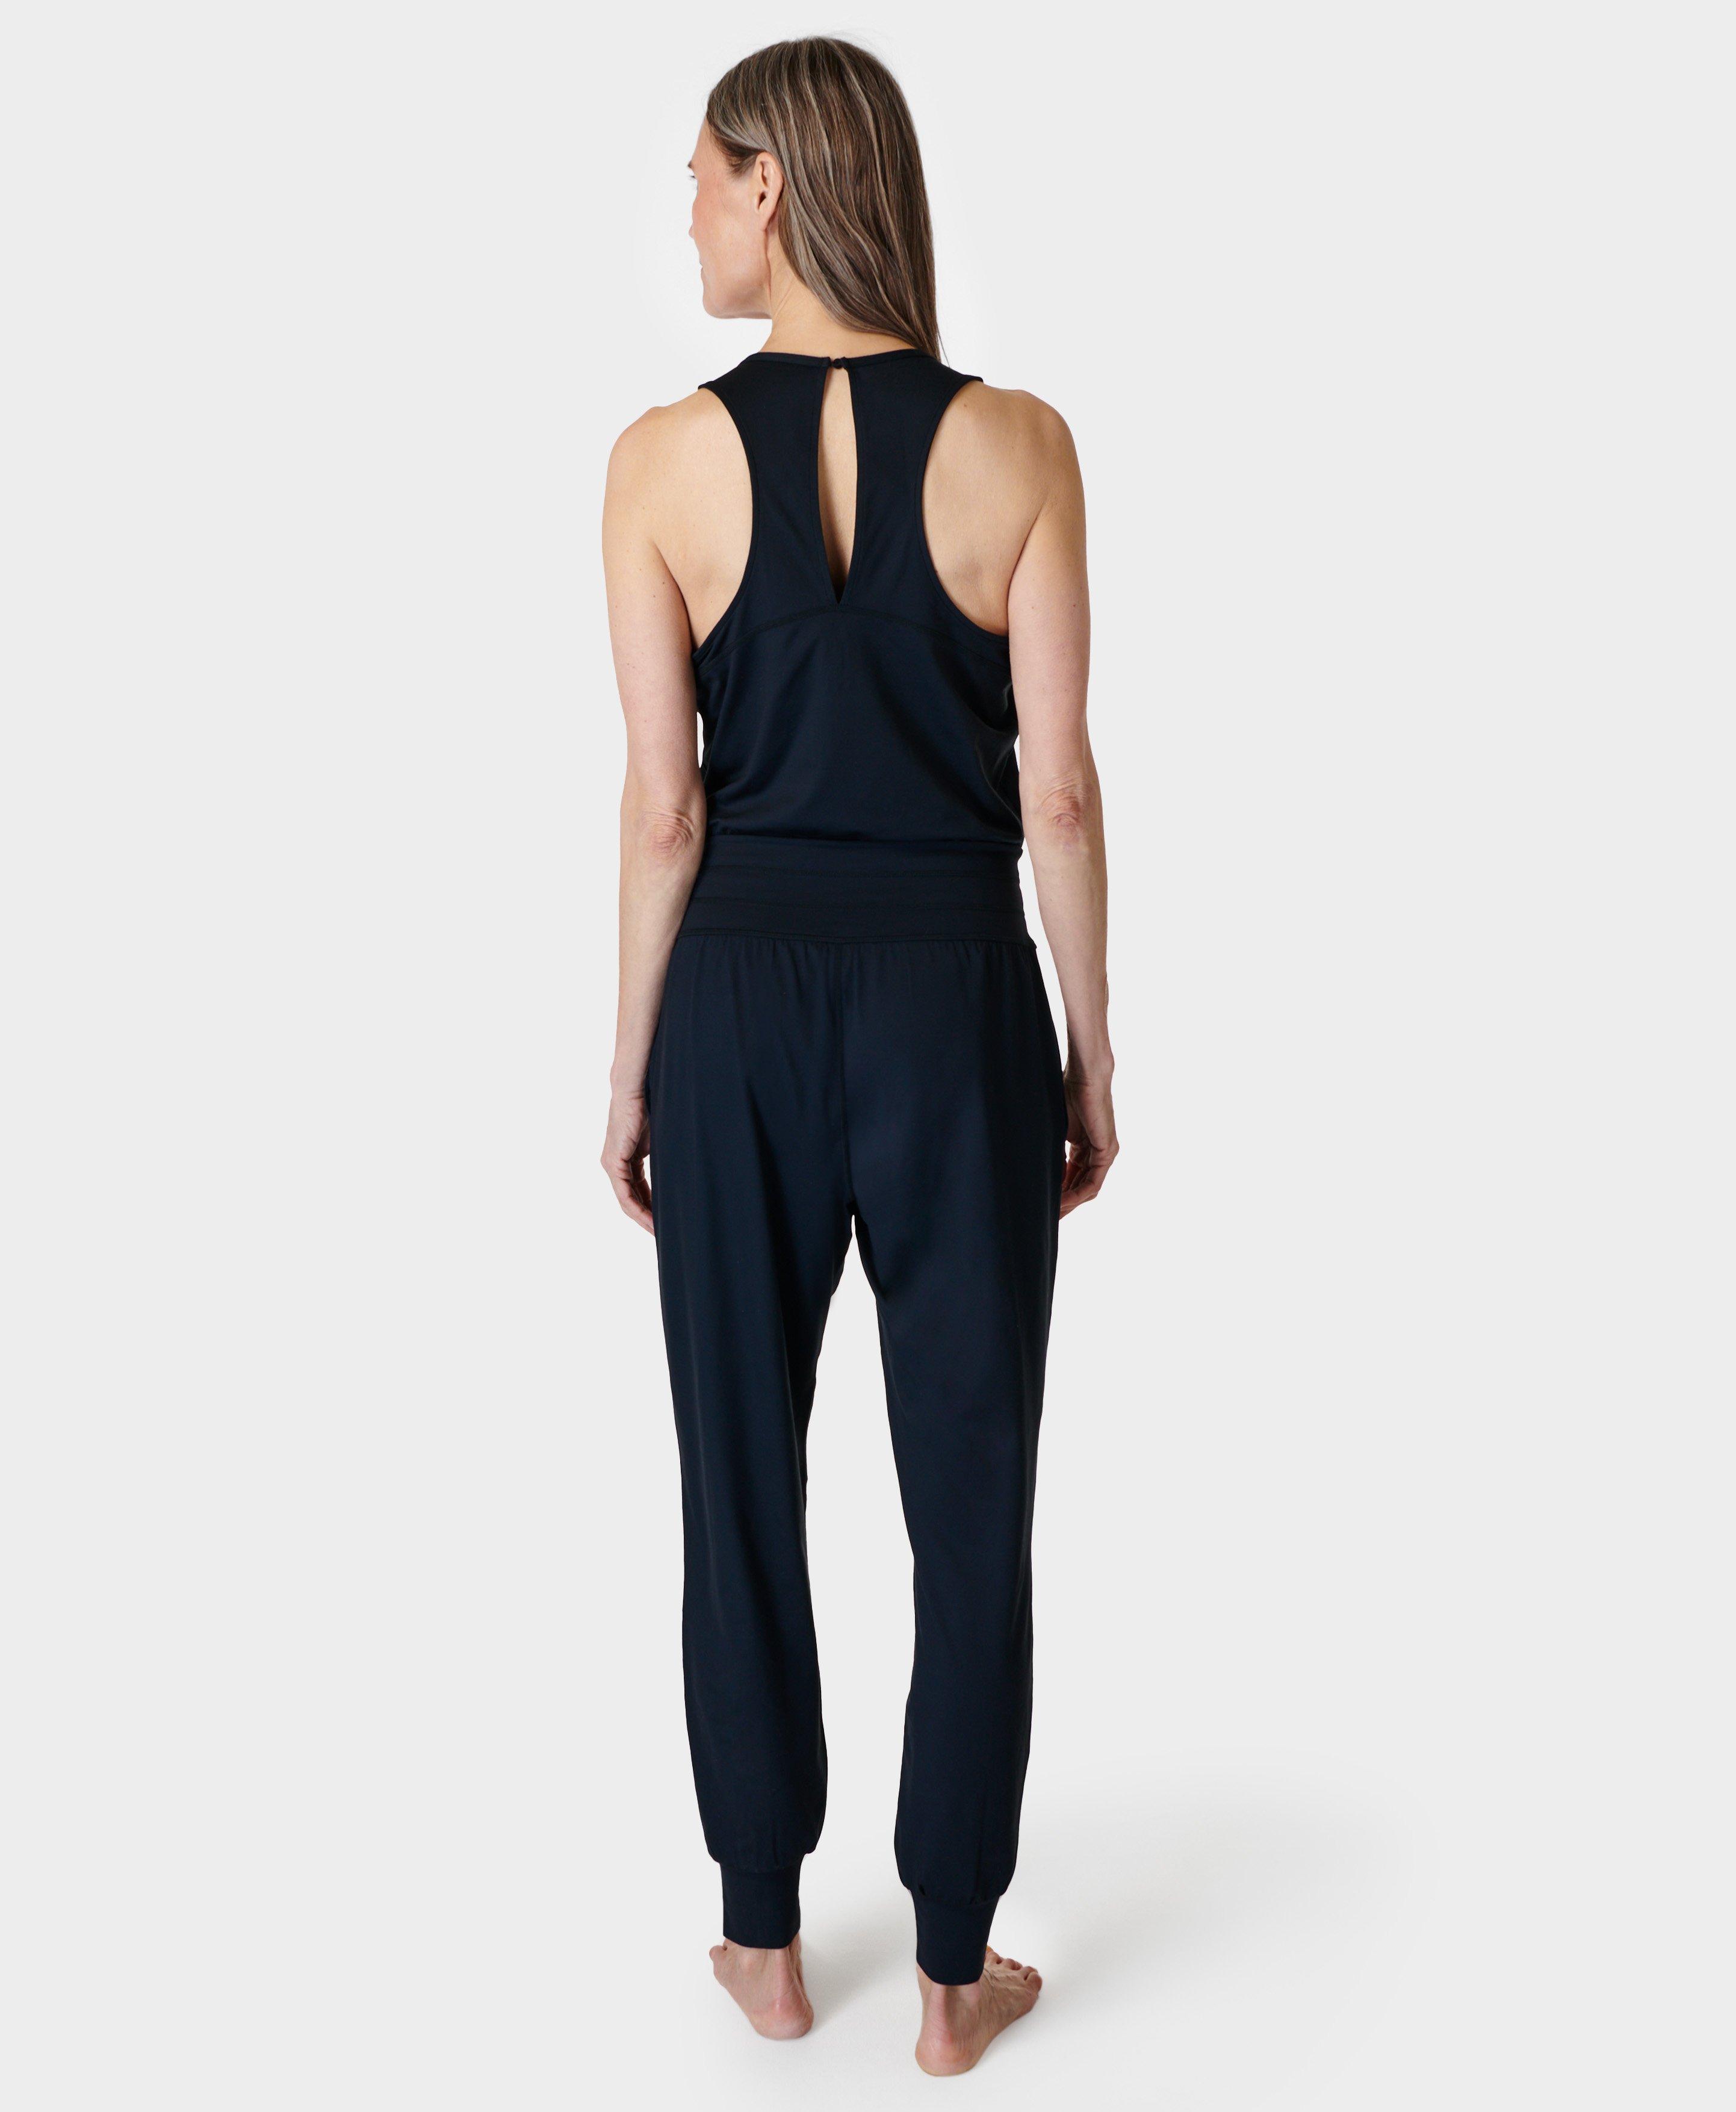 Gaia Yoga Vest - Black, Women's Vests